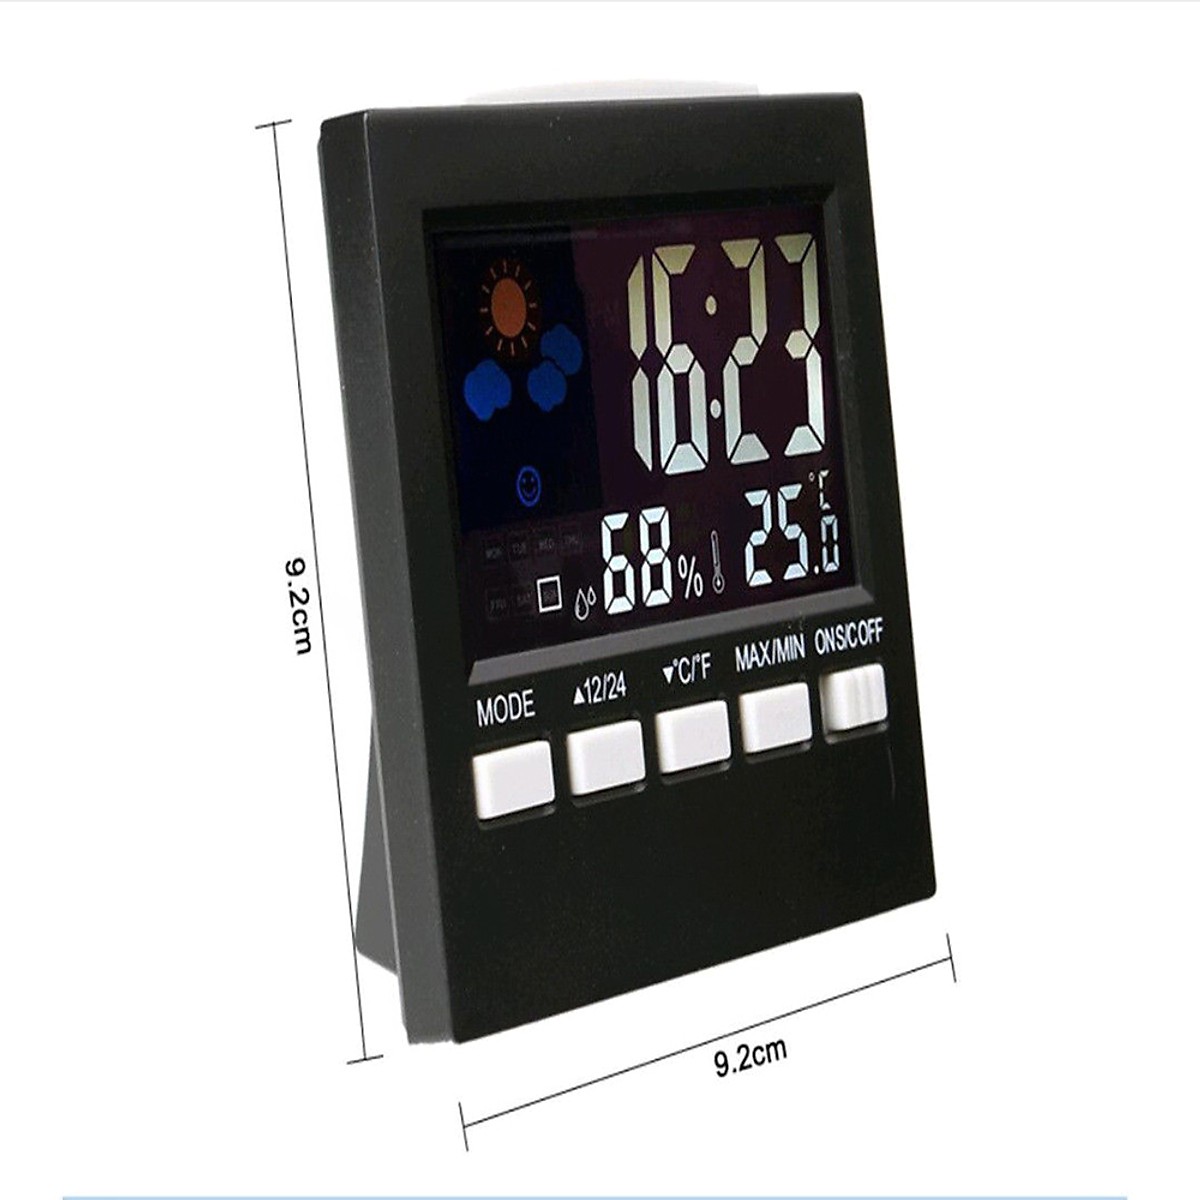 Đồng hồ để bàn đa năng màn LED đo nhiệt độ, độ ẩm, báo thức